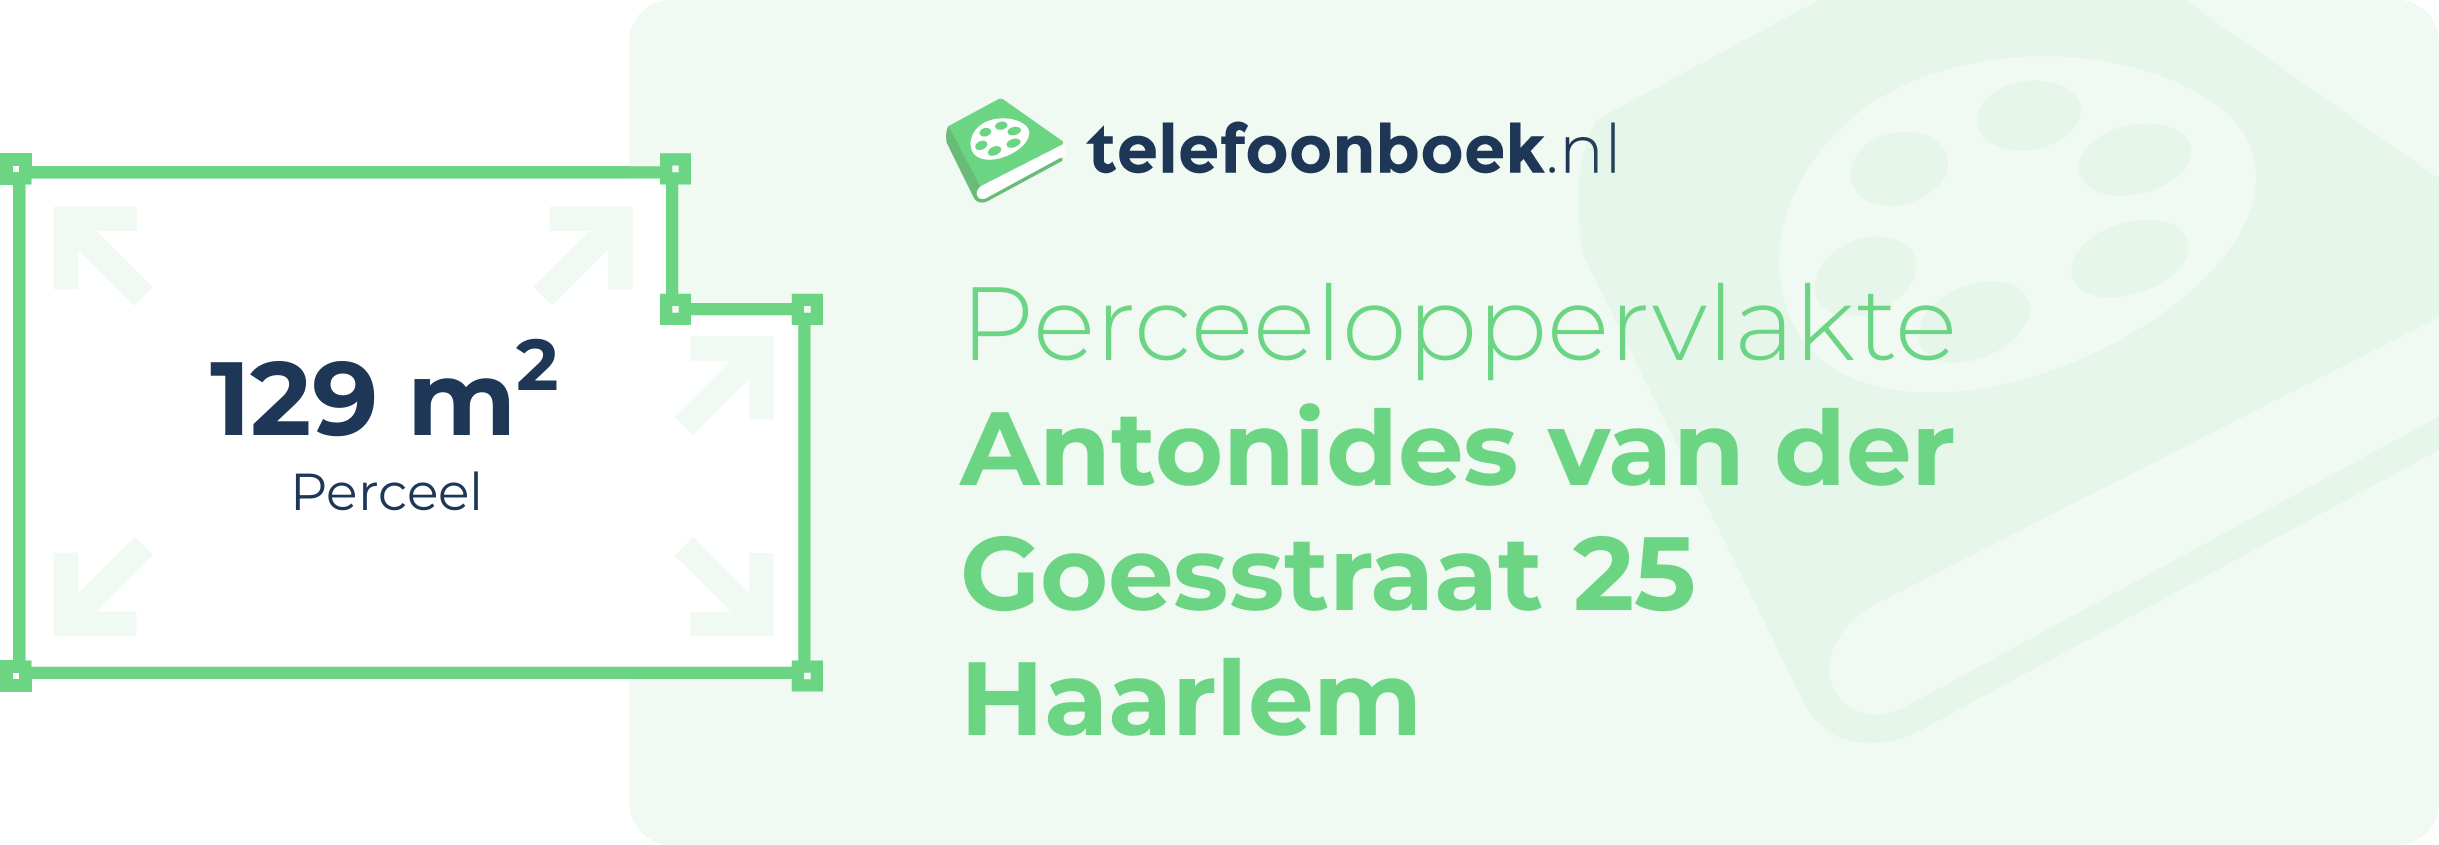 Perceeloppervlakte Antonides Van Der Goesstraat 25 Haarlem